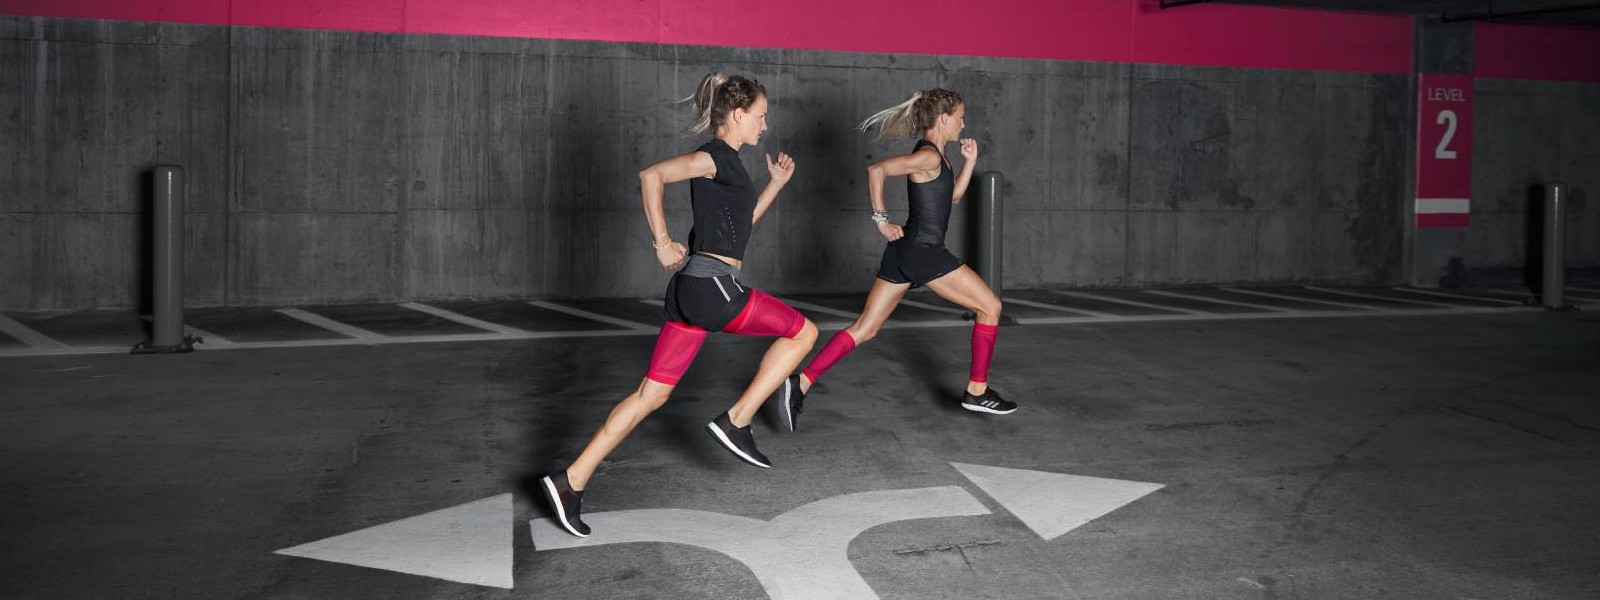 Zwei Läuferinnen mit pinken Compression Sleeves rennen durch ein Parkhaus